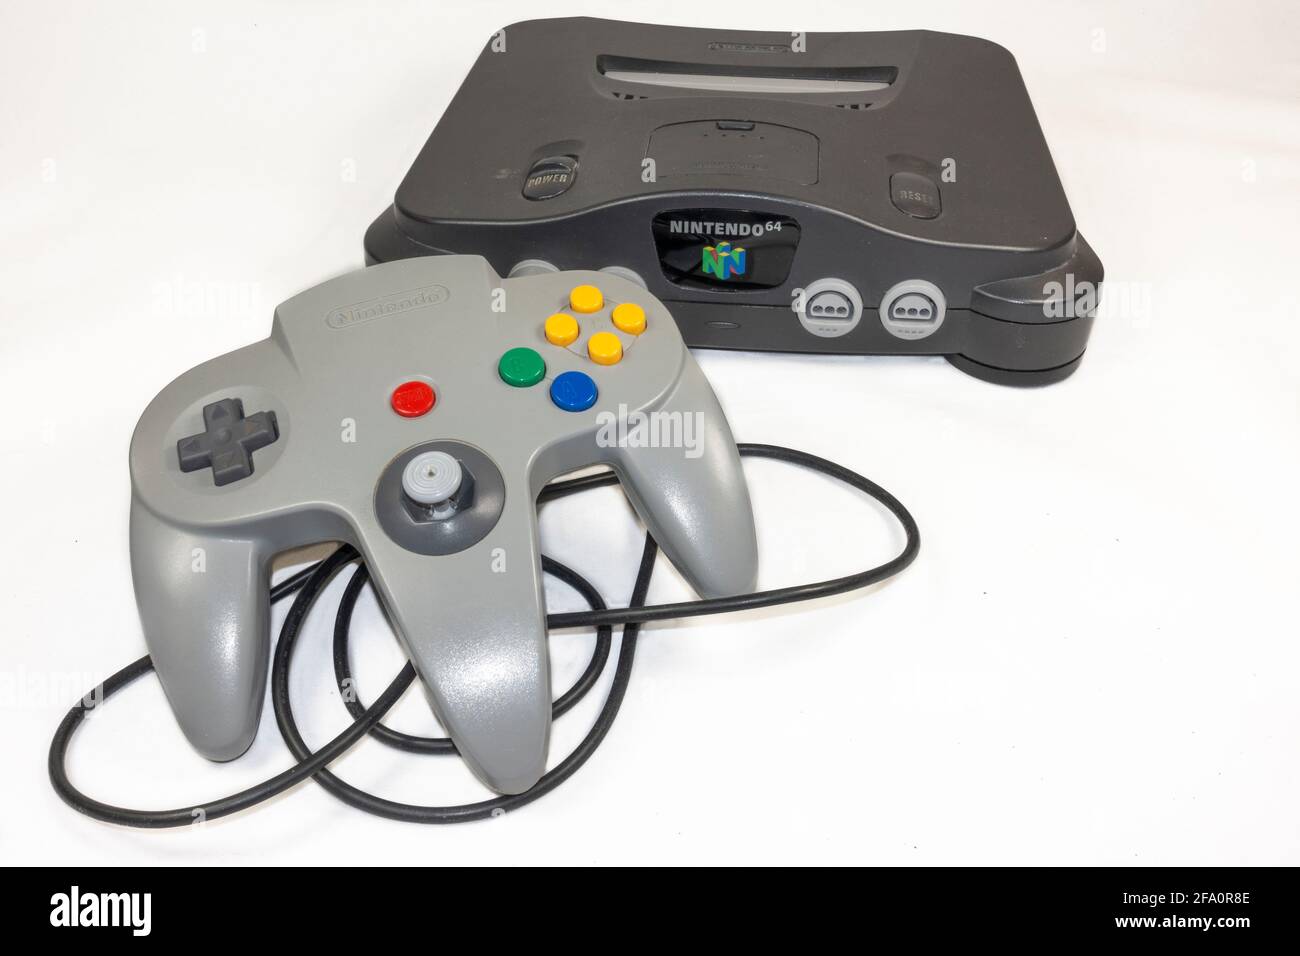 Une console de jeux vidéo Nintendo 64 ou N64, une console de jeux vidéo de cinquième génération lancée en 1996 au Japon. Banque D'Images